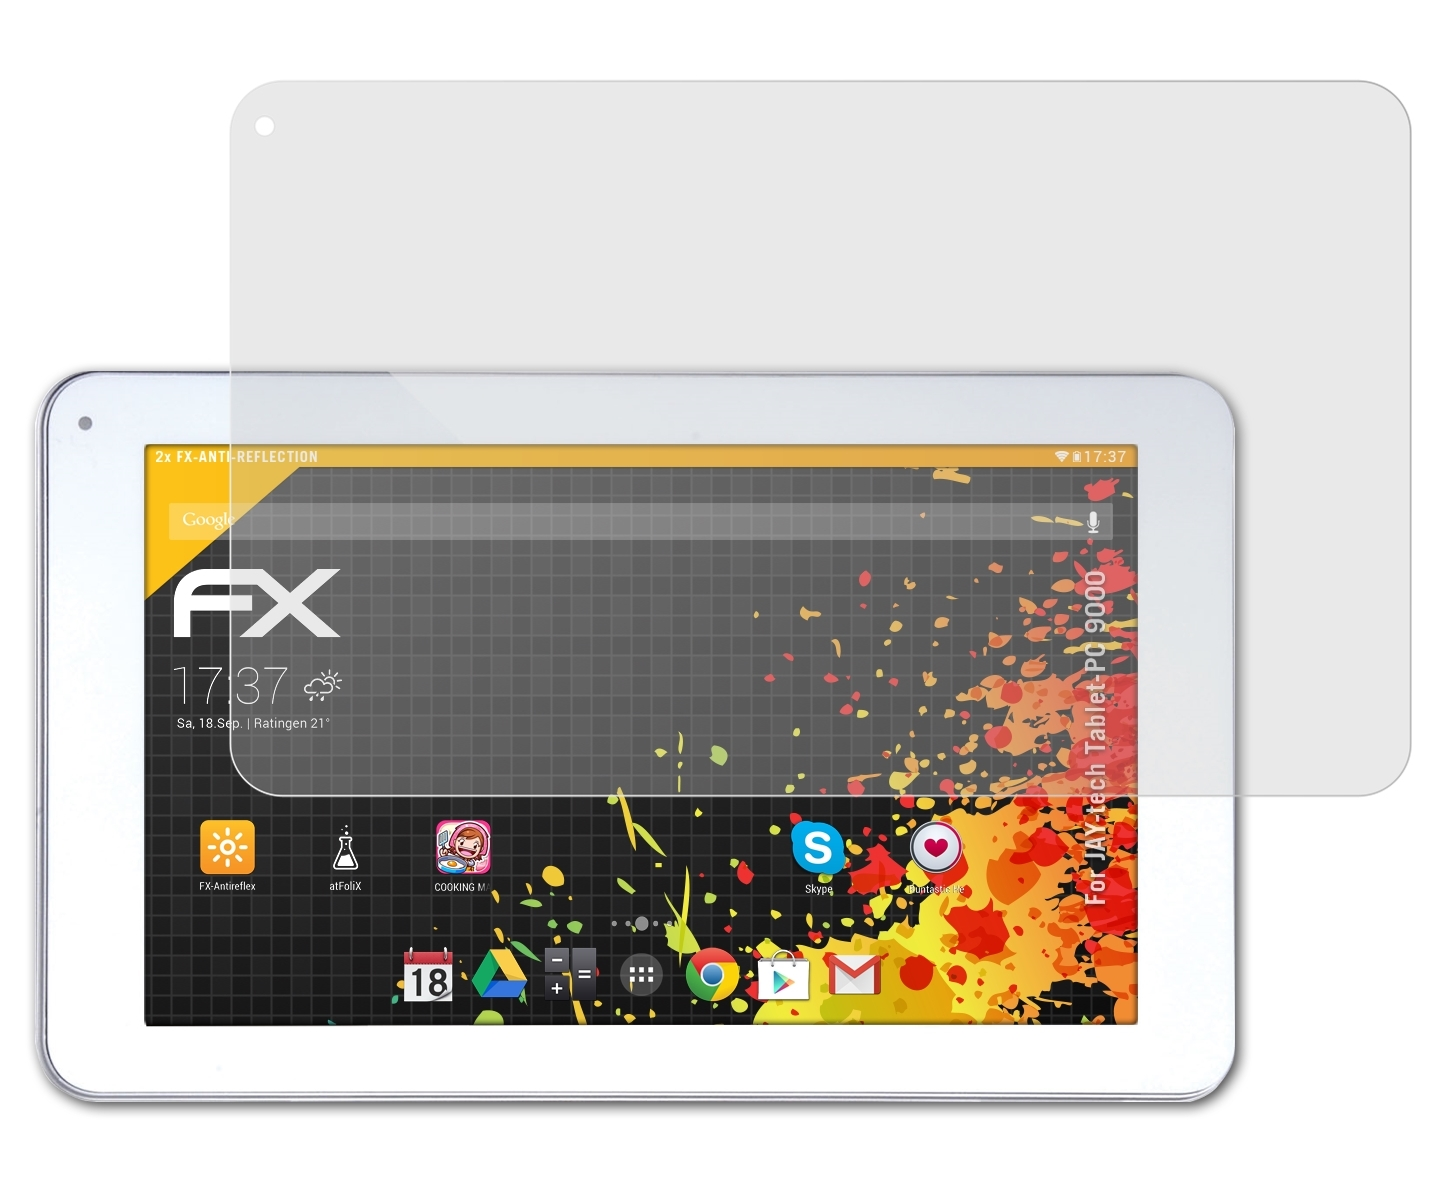 JAY-tech Displayschutz(für FX-Antireflex 2x ATFOLIX 9000) Tablet-PC